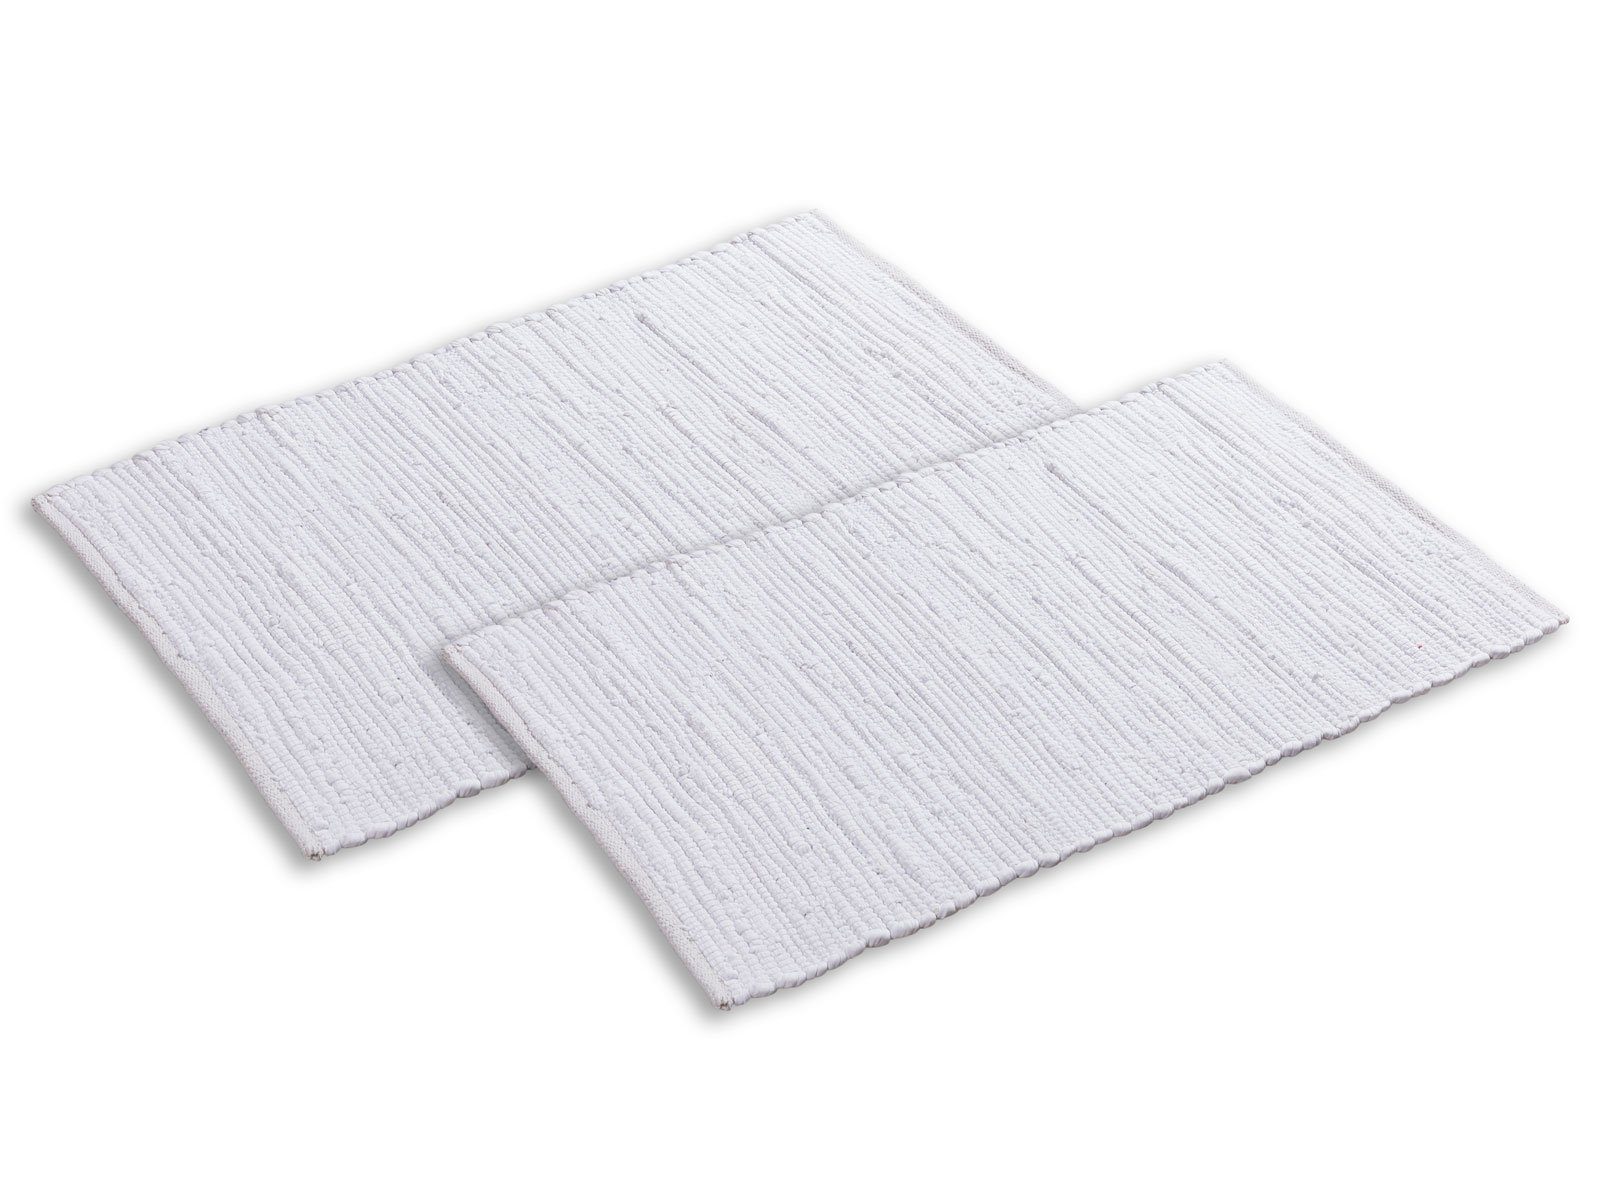 Teppich Badteppich Set 2er groß 80x50 cm 100% Baumwolle Badematte vers. Farben, Minara weiß